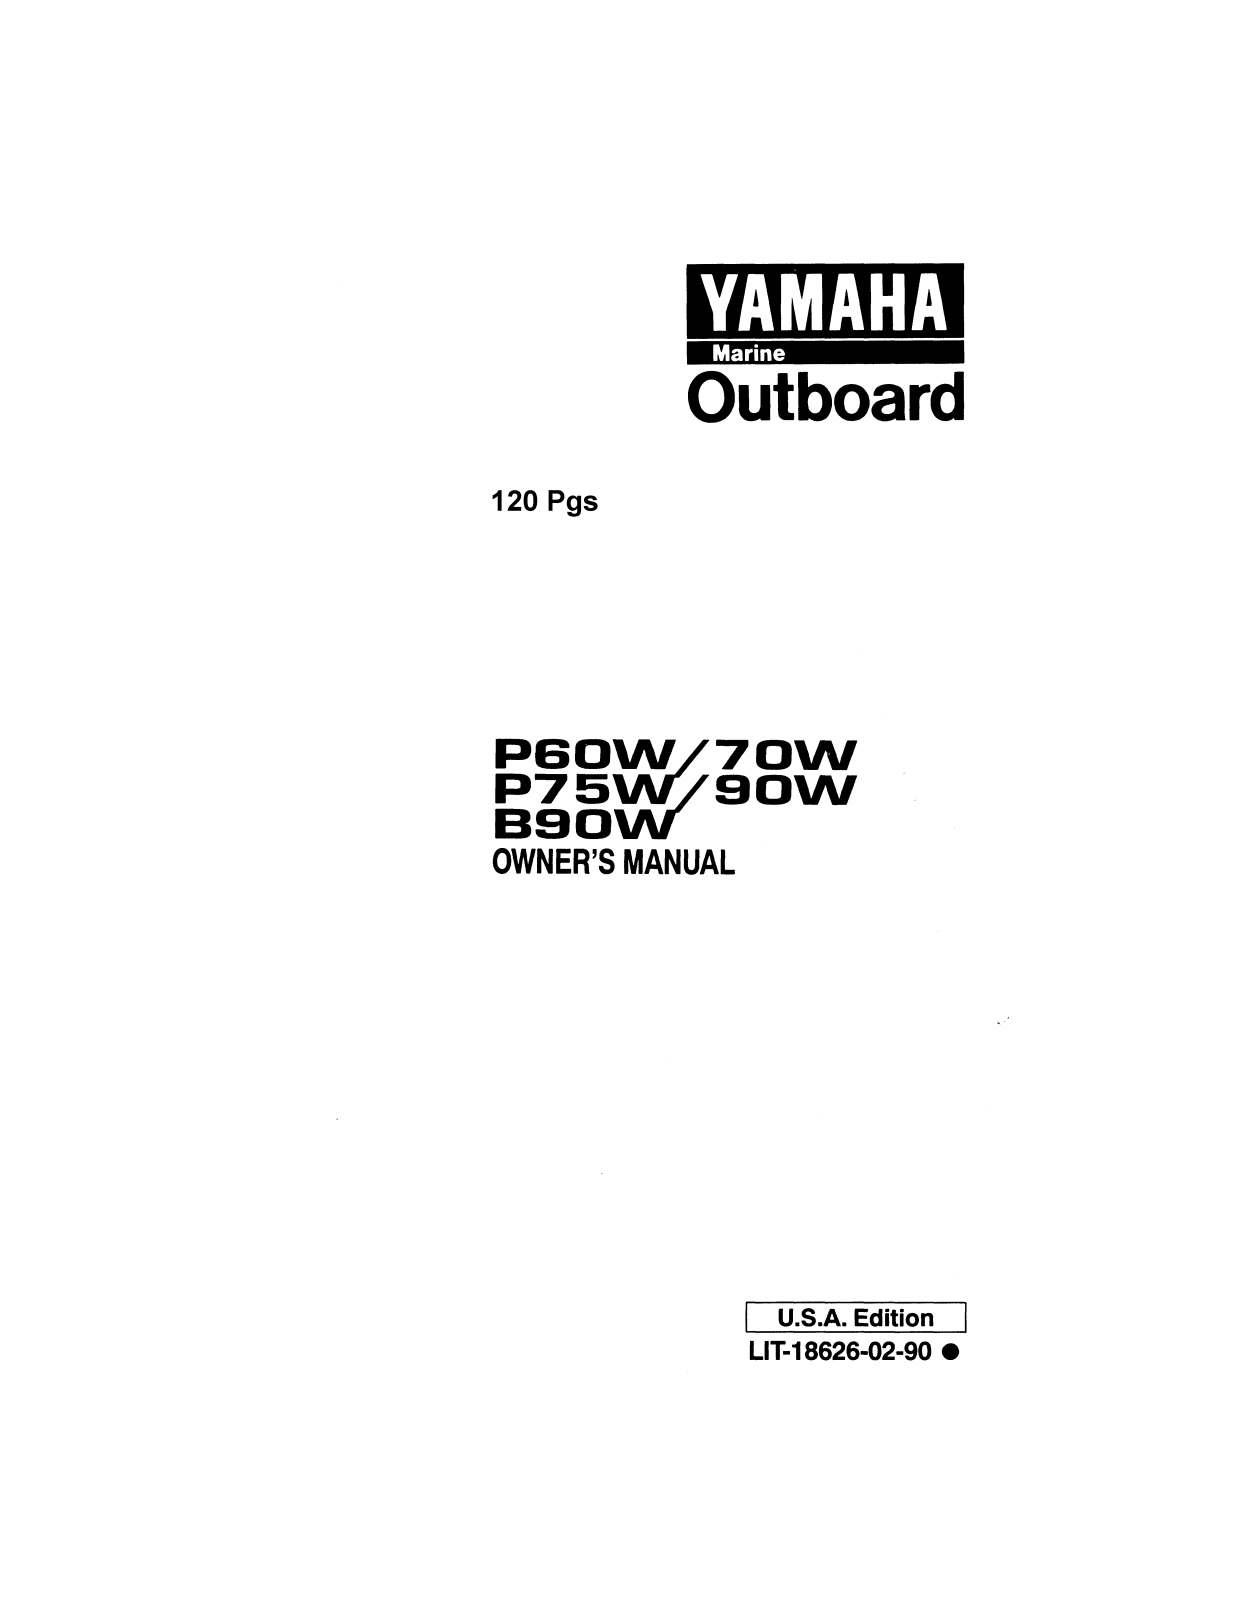 Yamaha P60W, P70W, P75W, P90W, B90W Manual